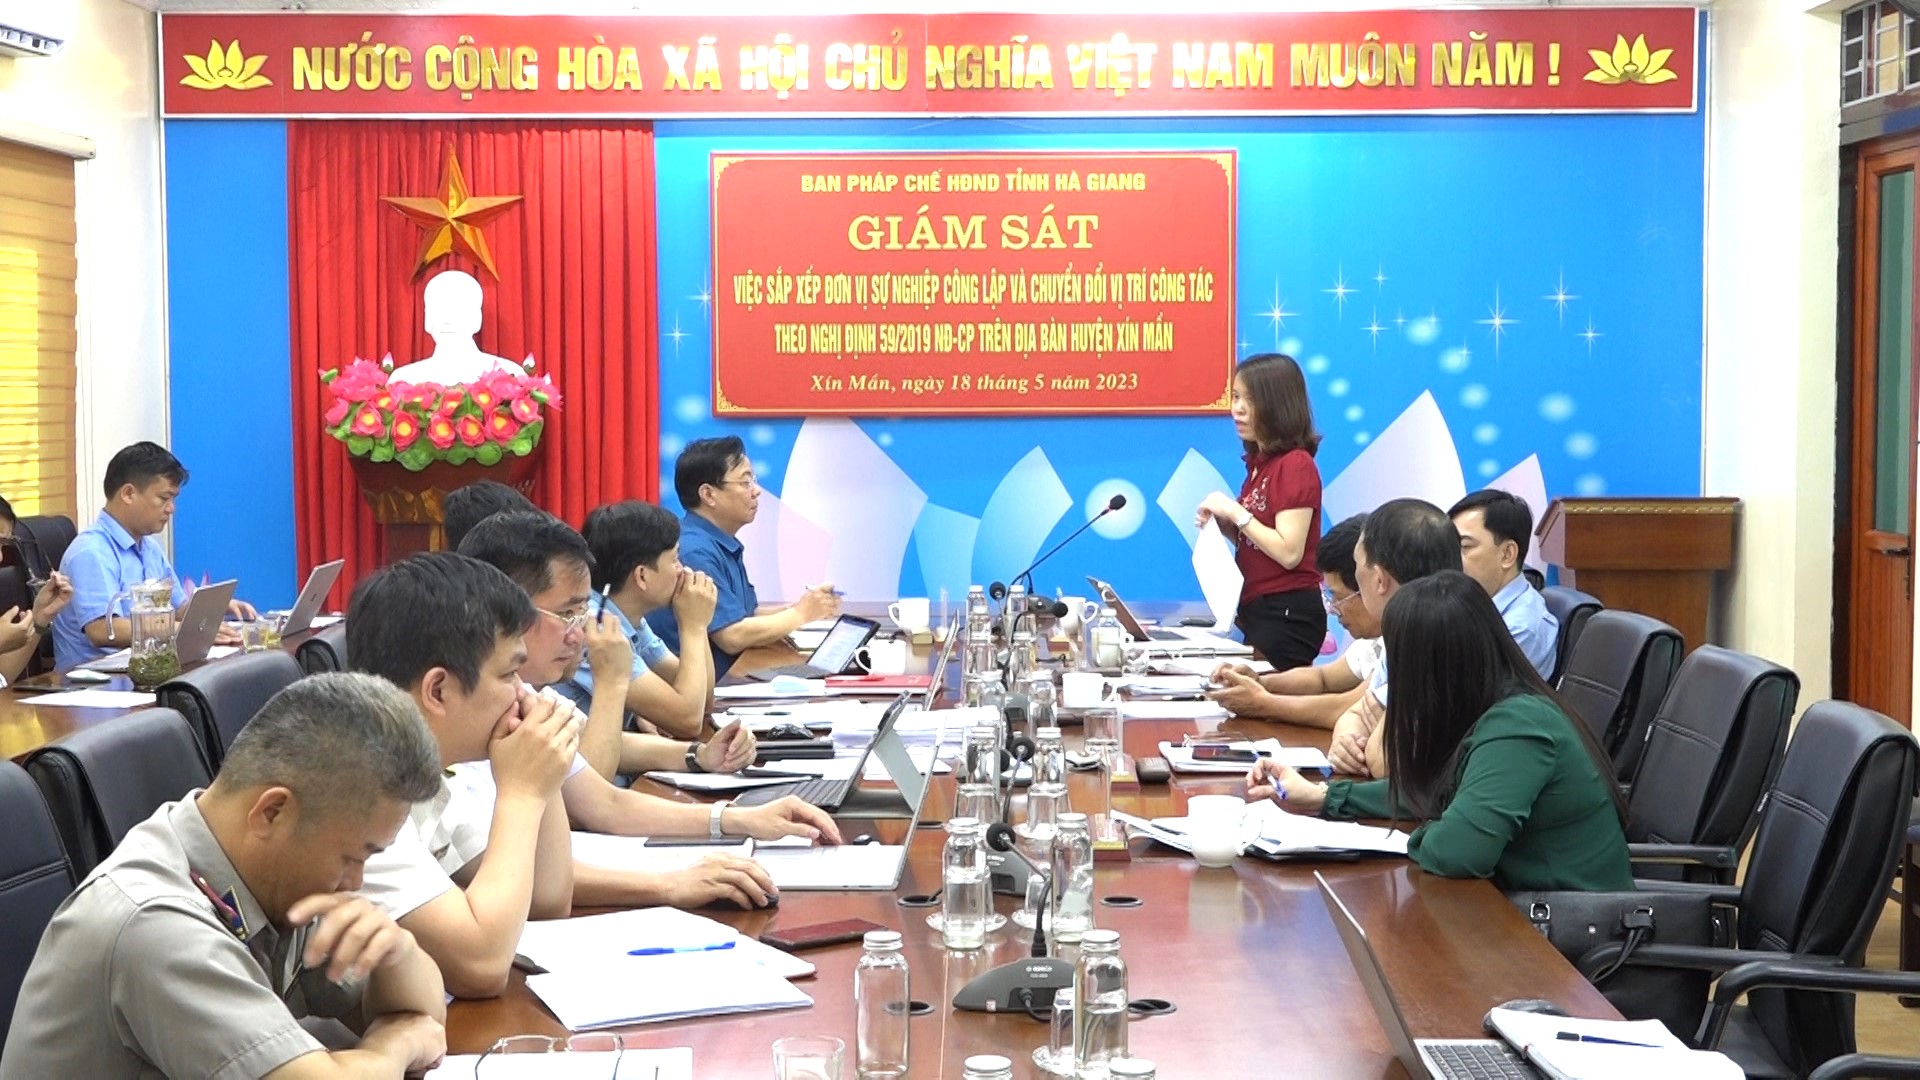 Ban pháp chế HĐND tỉnh giám sát tại huyện Xín Mần